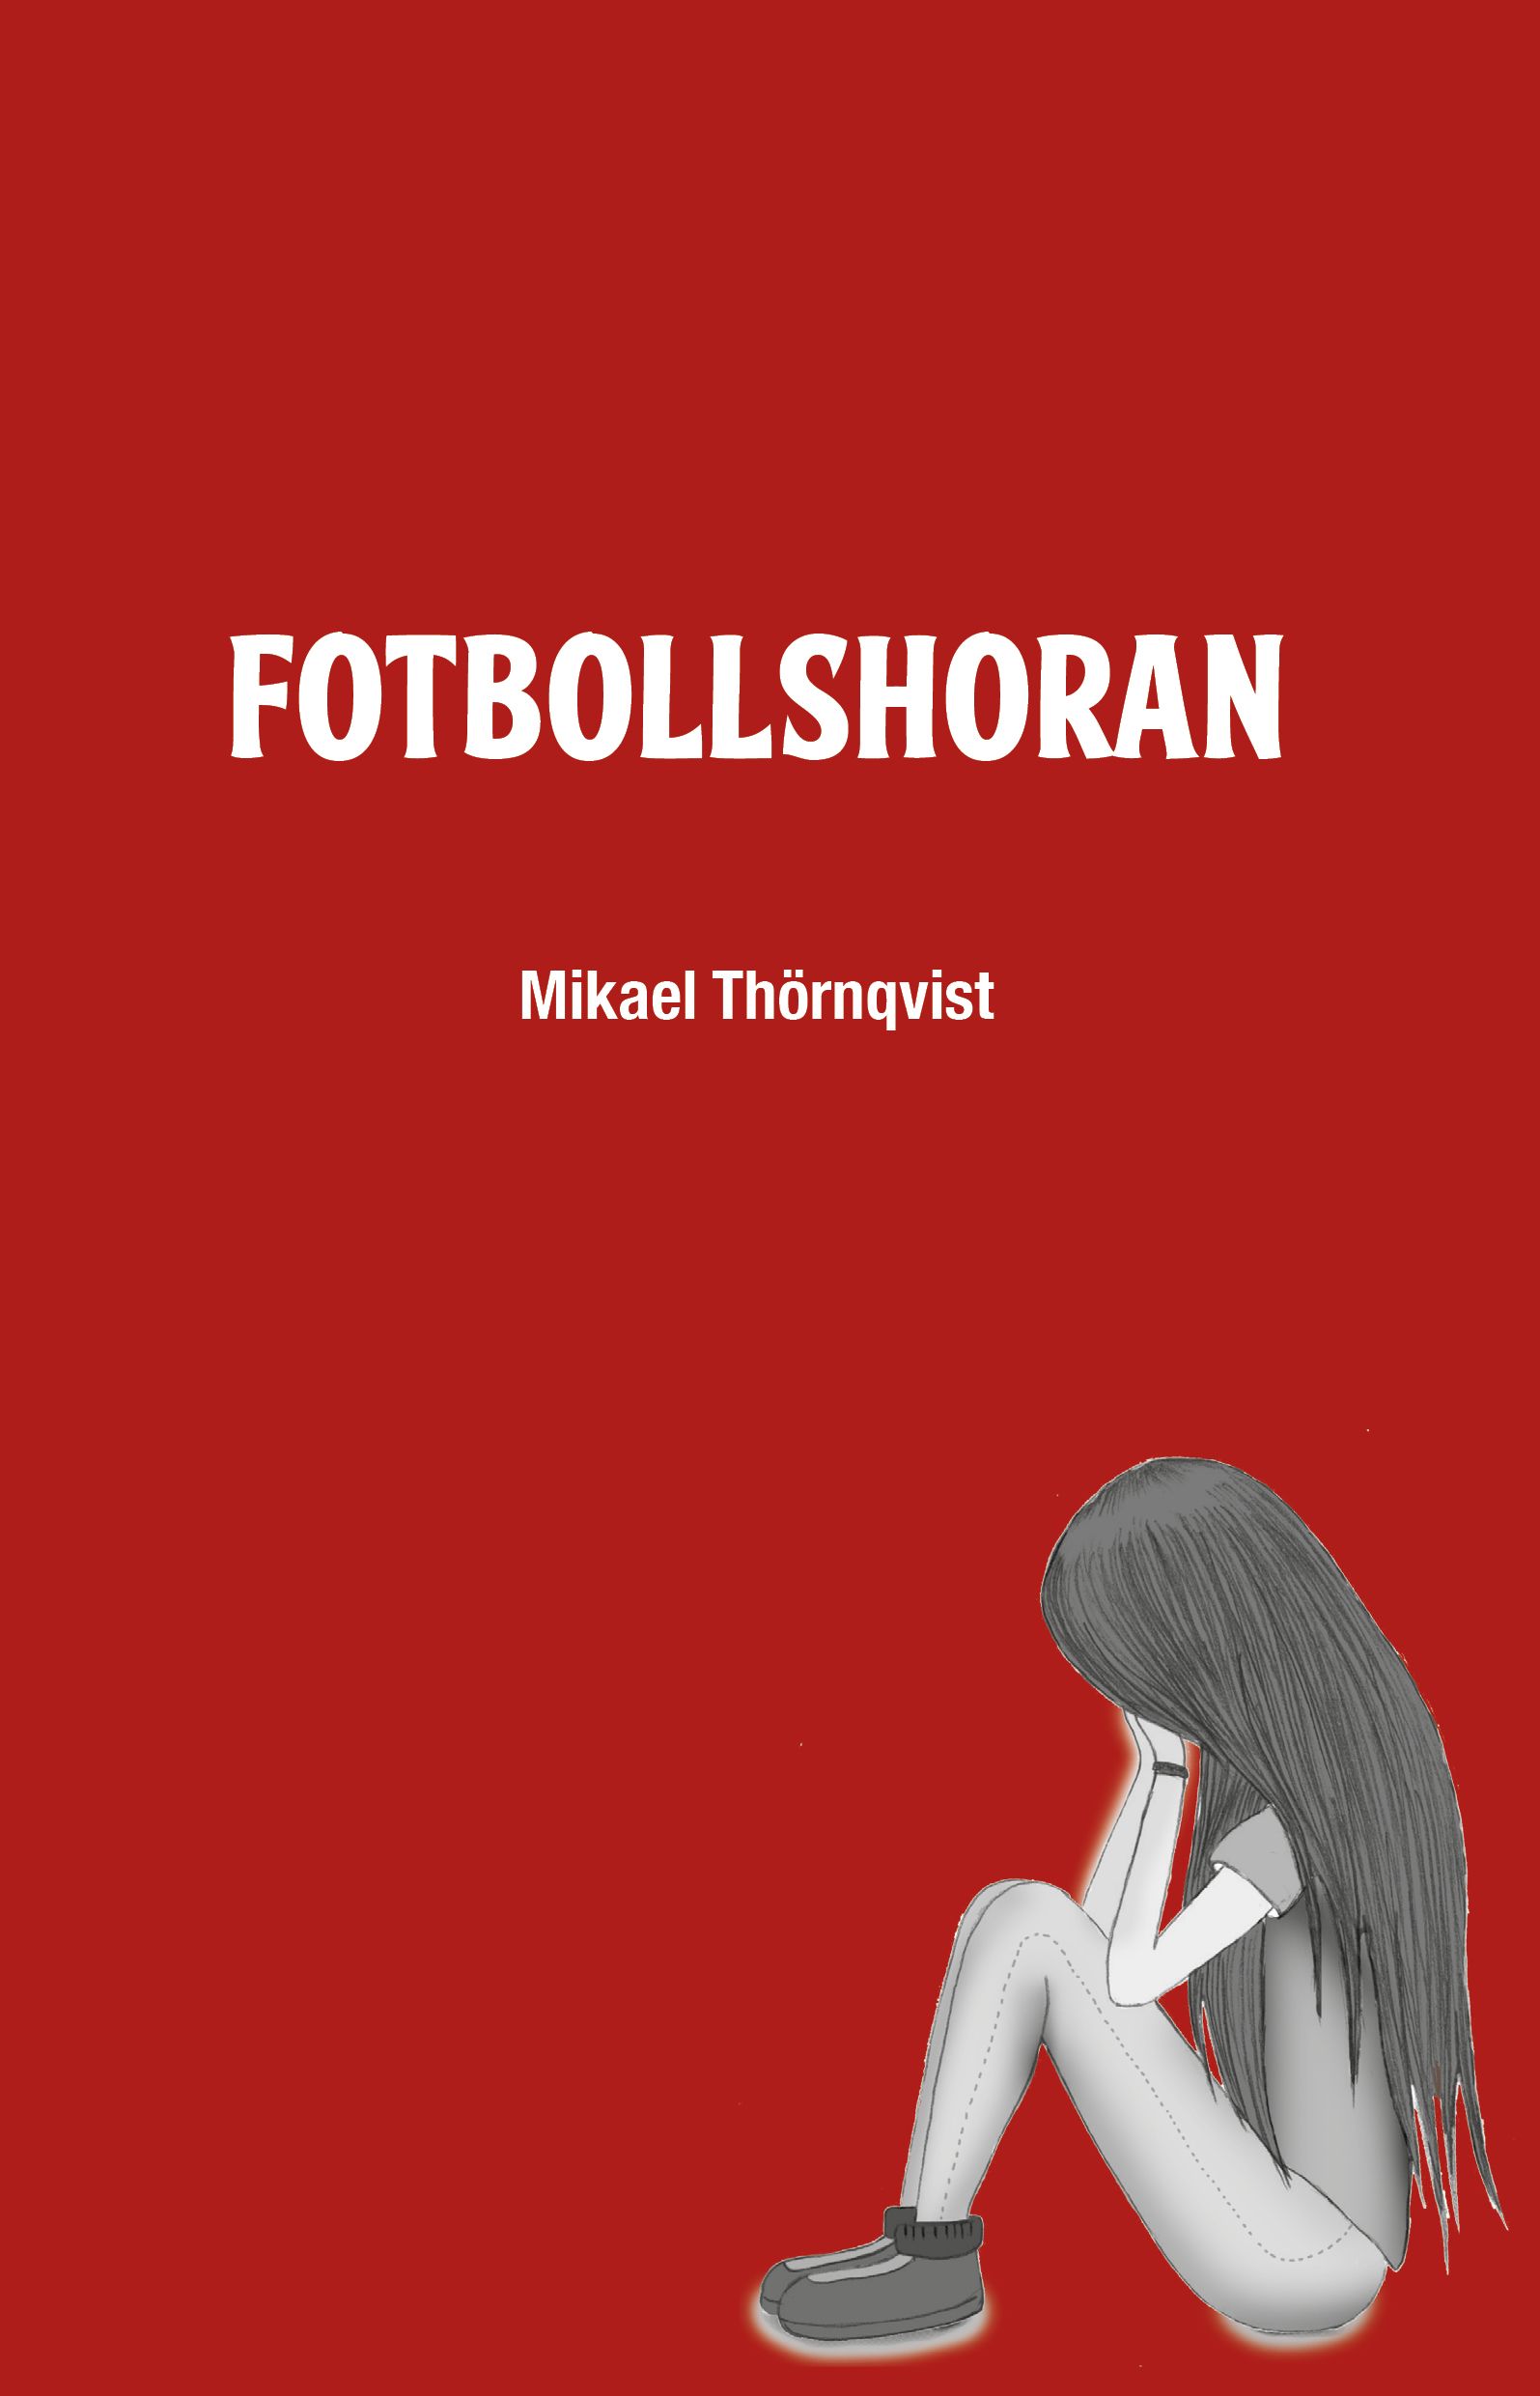 Fotbollshoran, e-bok av Mikael Thörnqvist